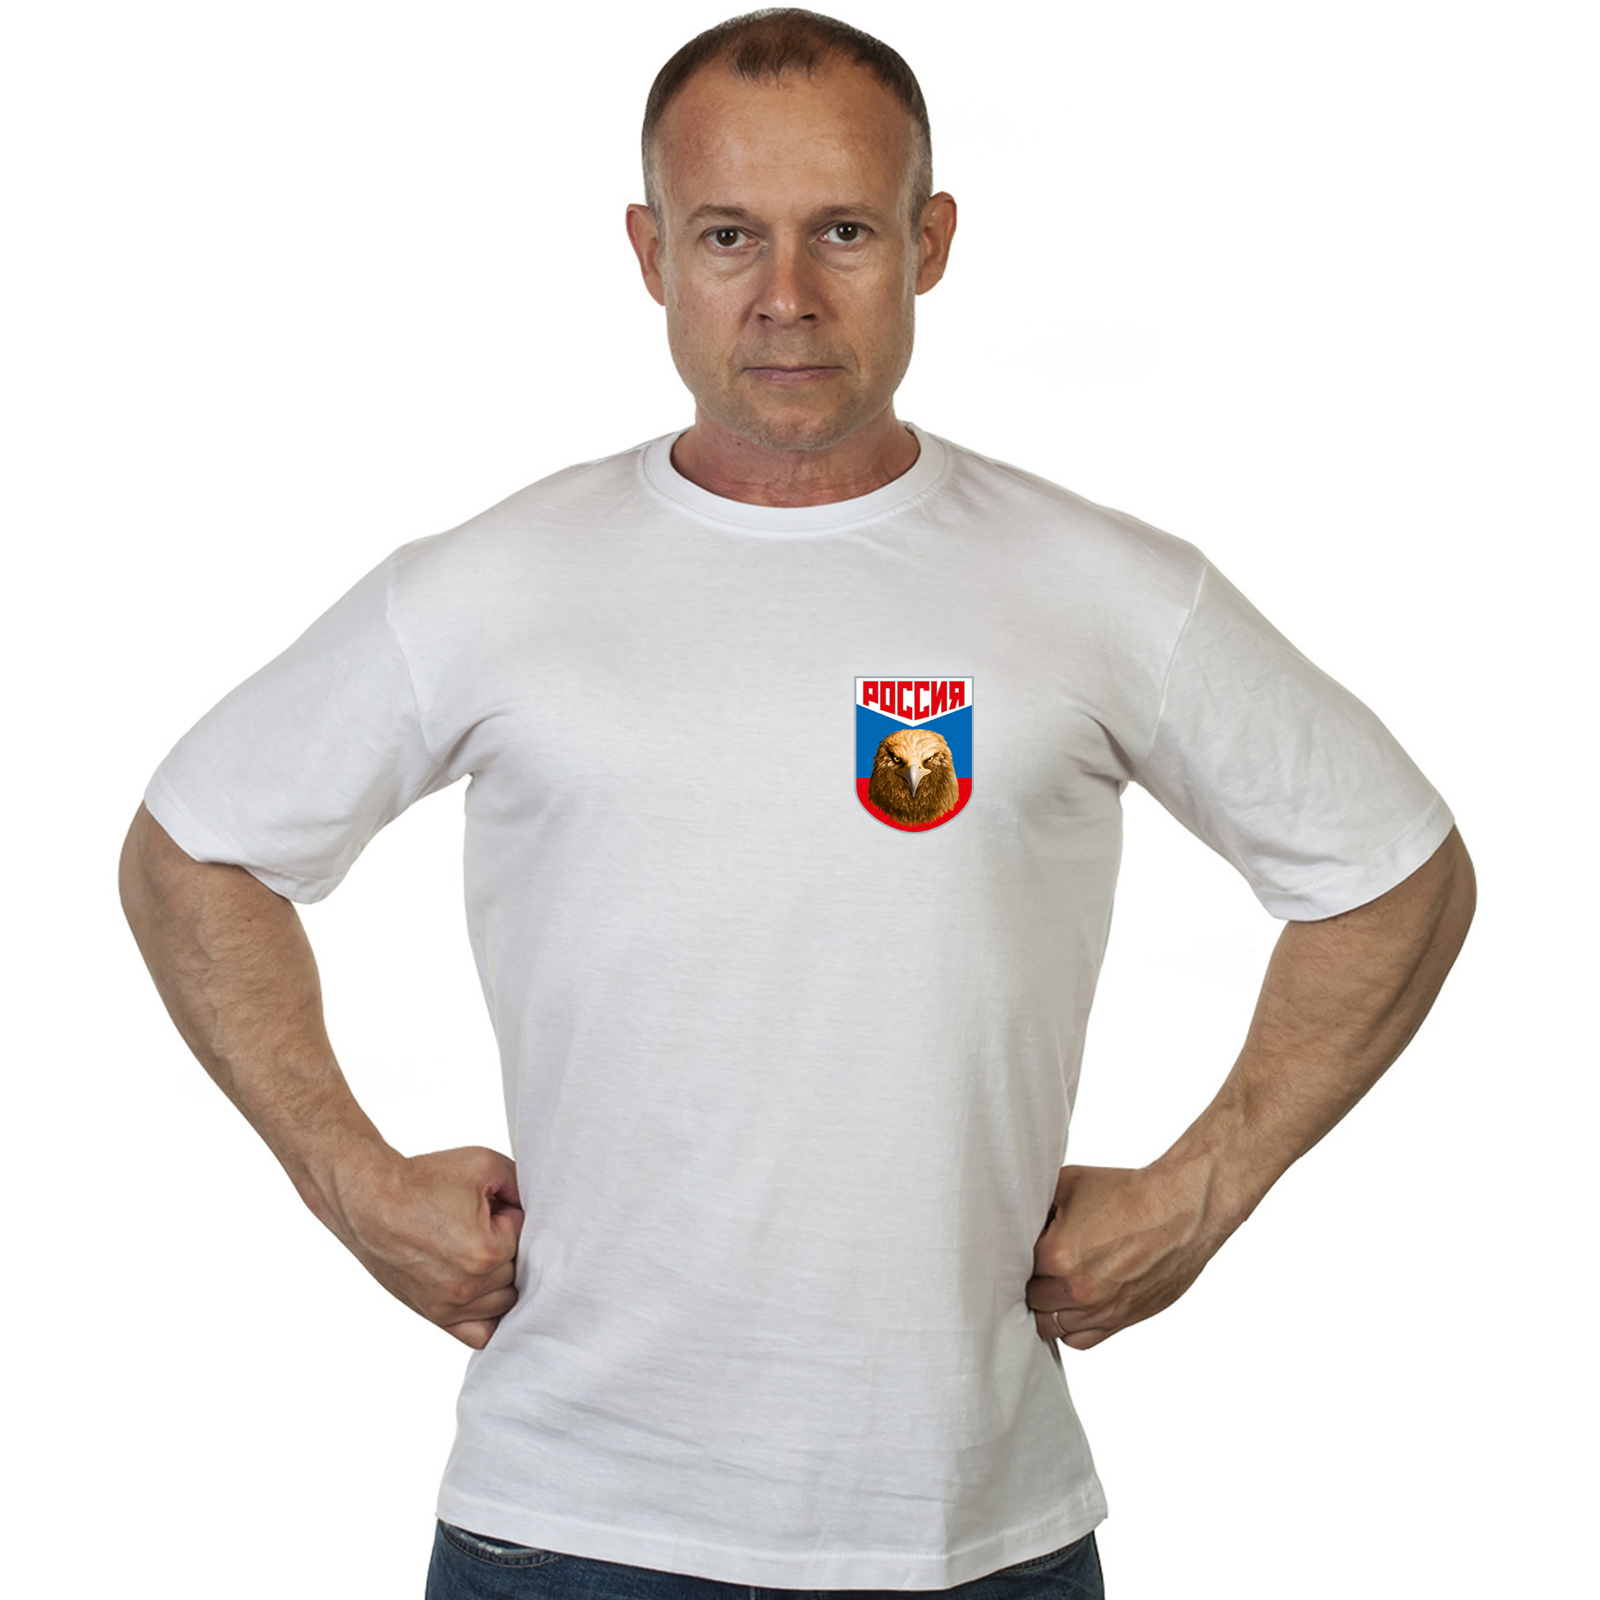 Краповая футболка с термотрансфером "Россия" 